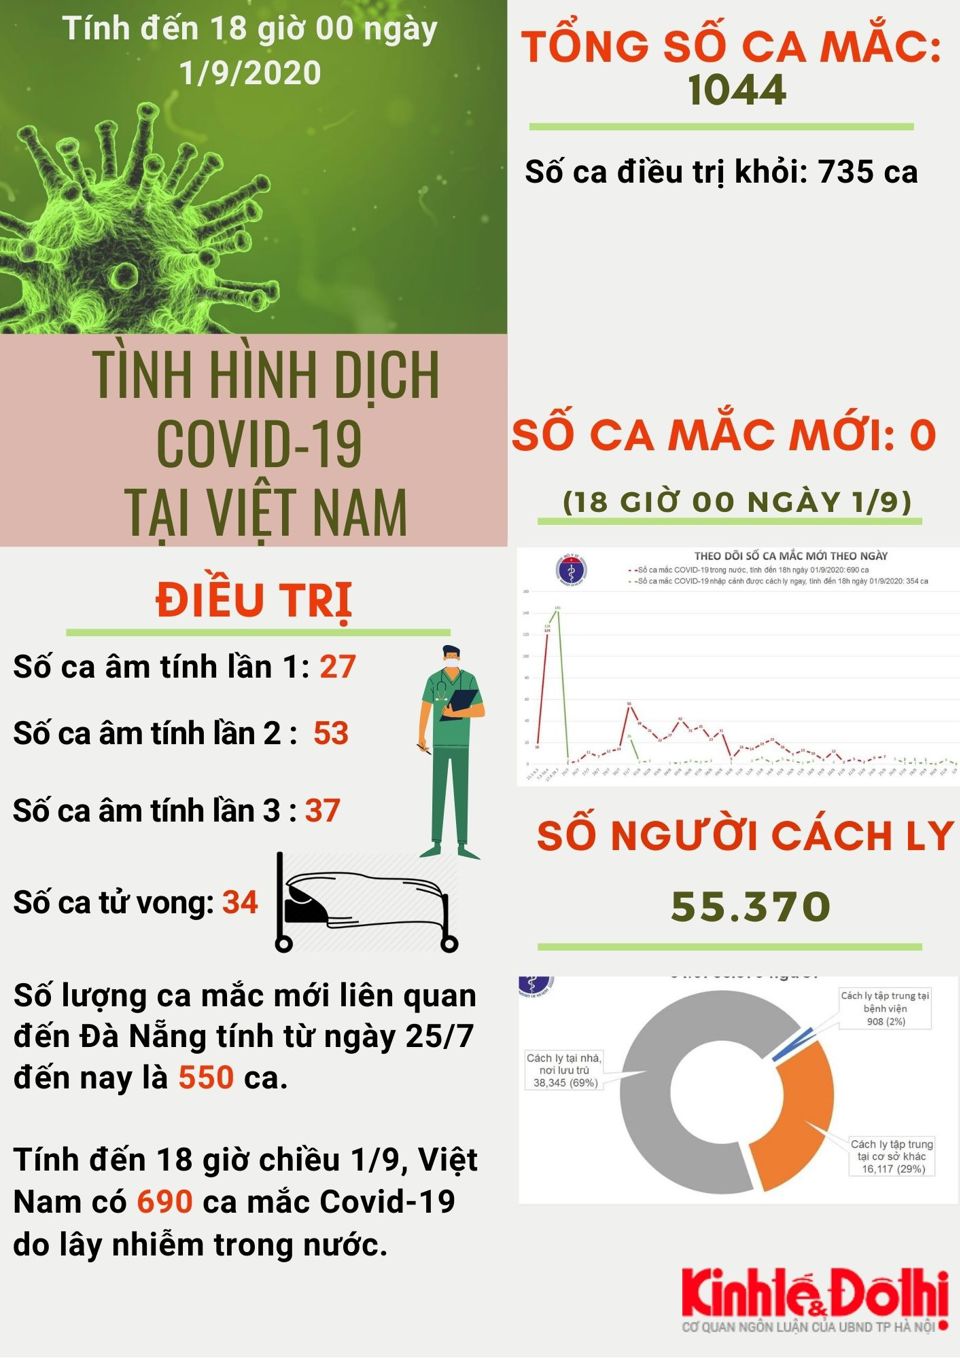 [Infographic] Việt Nam chữa khỏi 735 ca mắc Covid-19 - Ảnh 1